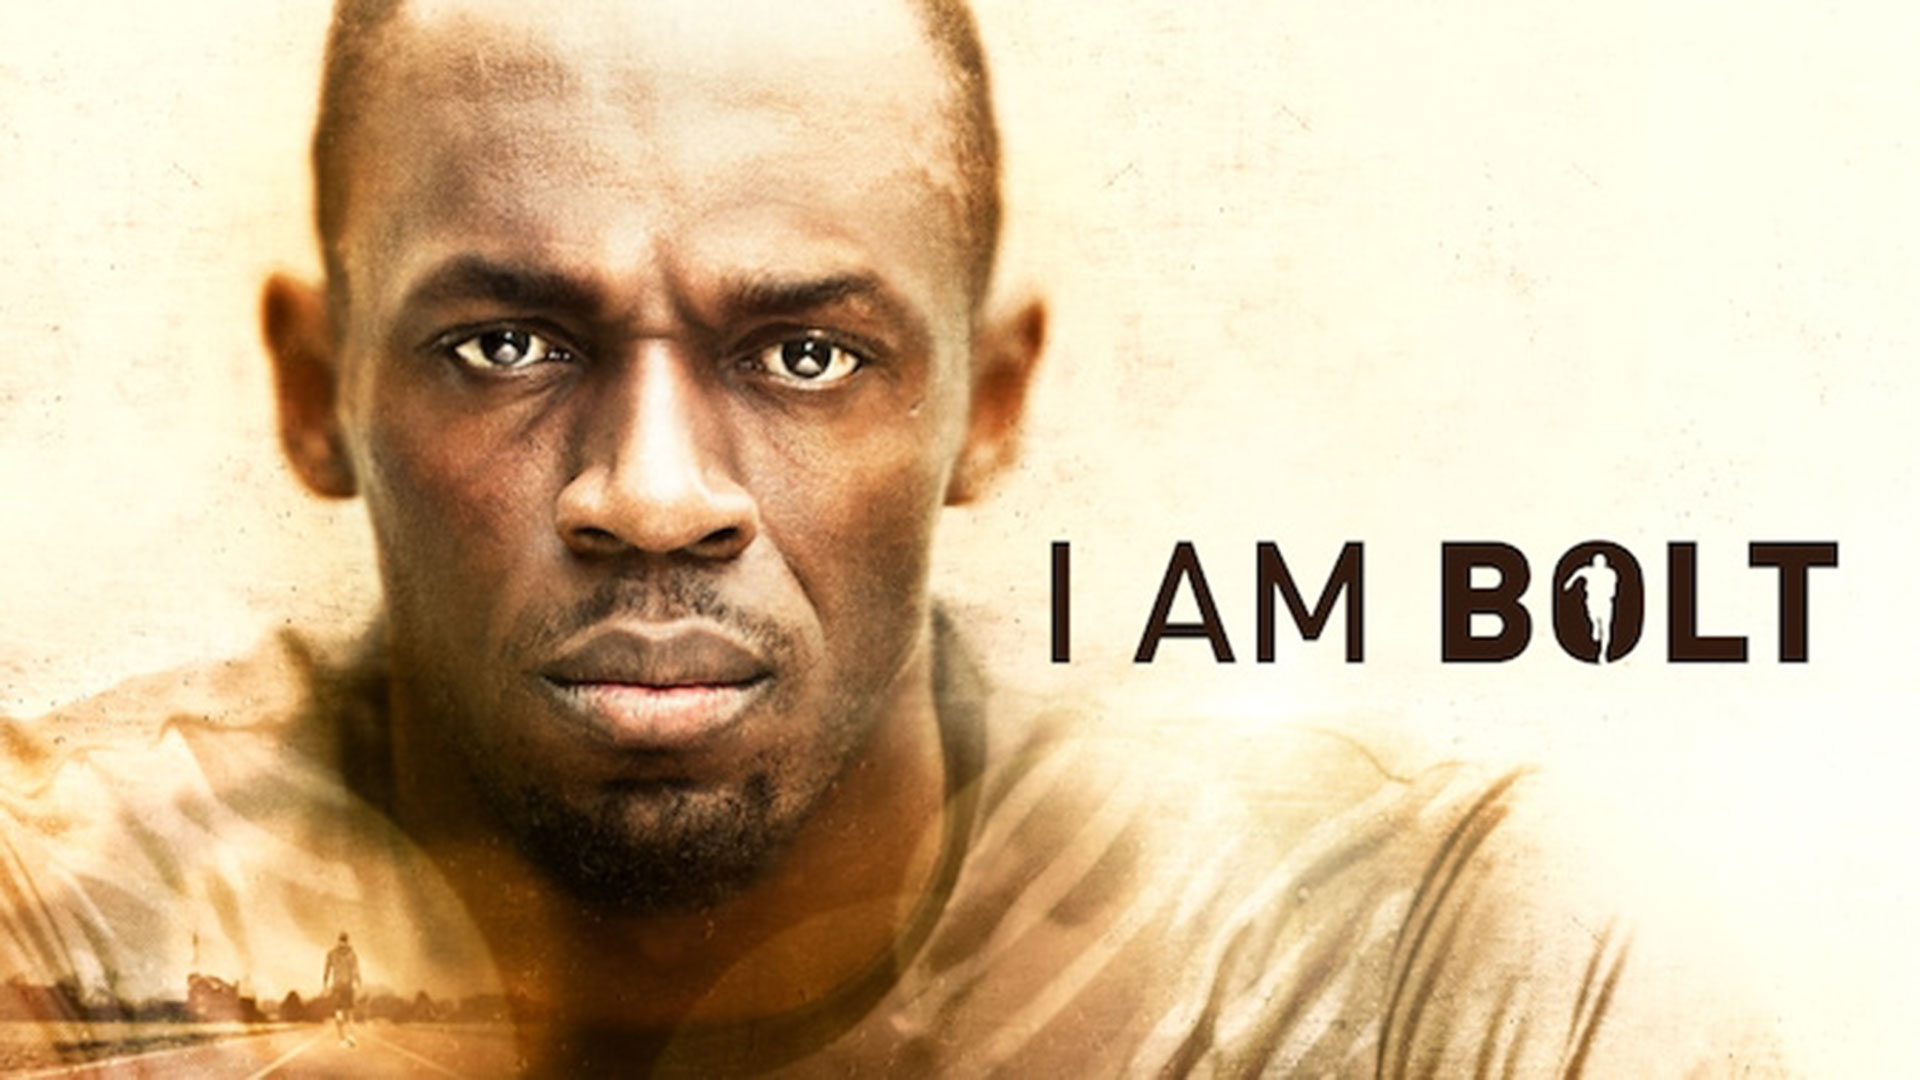 La historia personal del hombre más rápido del mundo llega a HBO Max con “Yo soy Bolt”